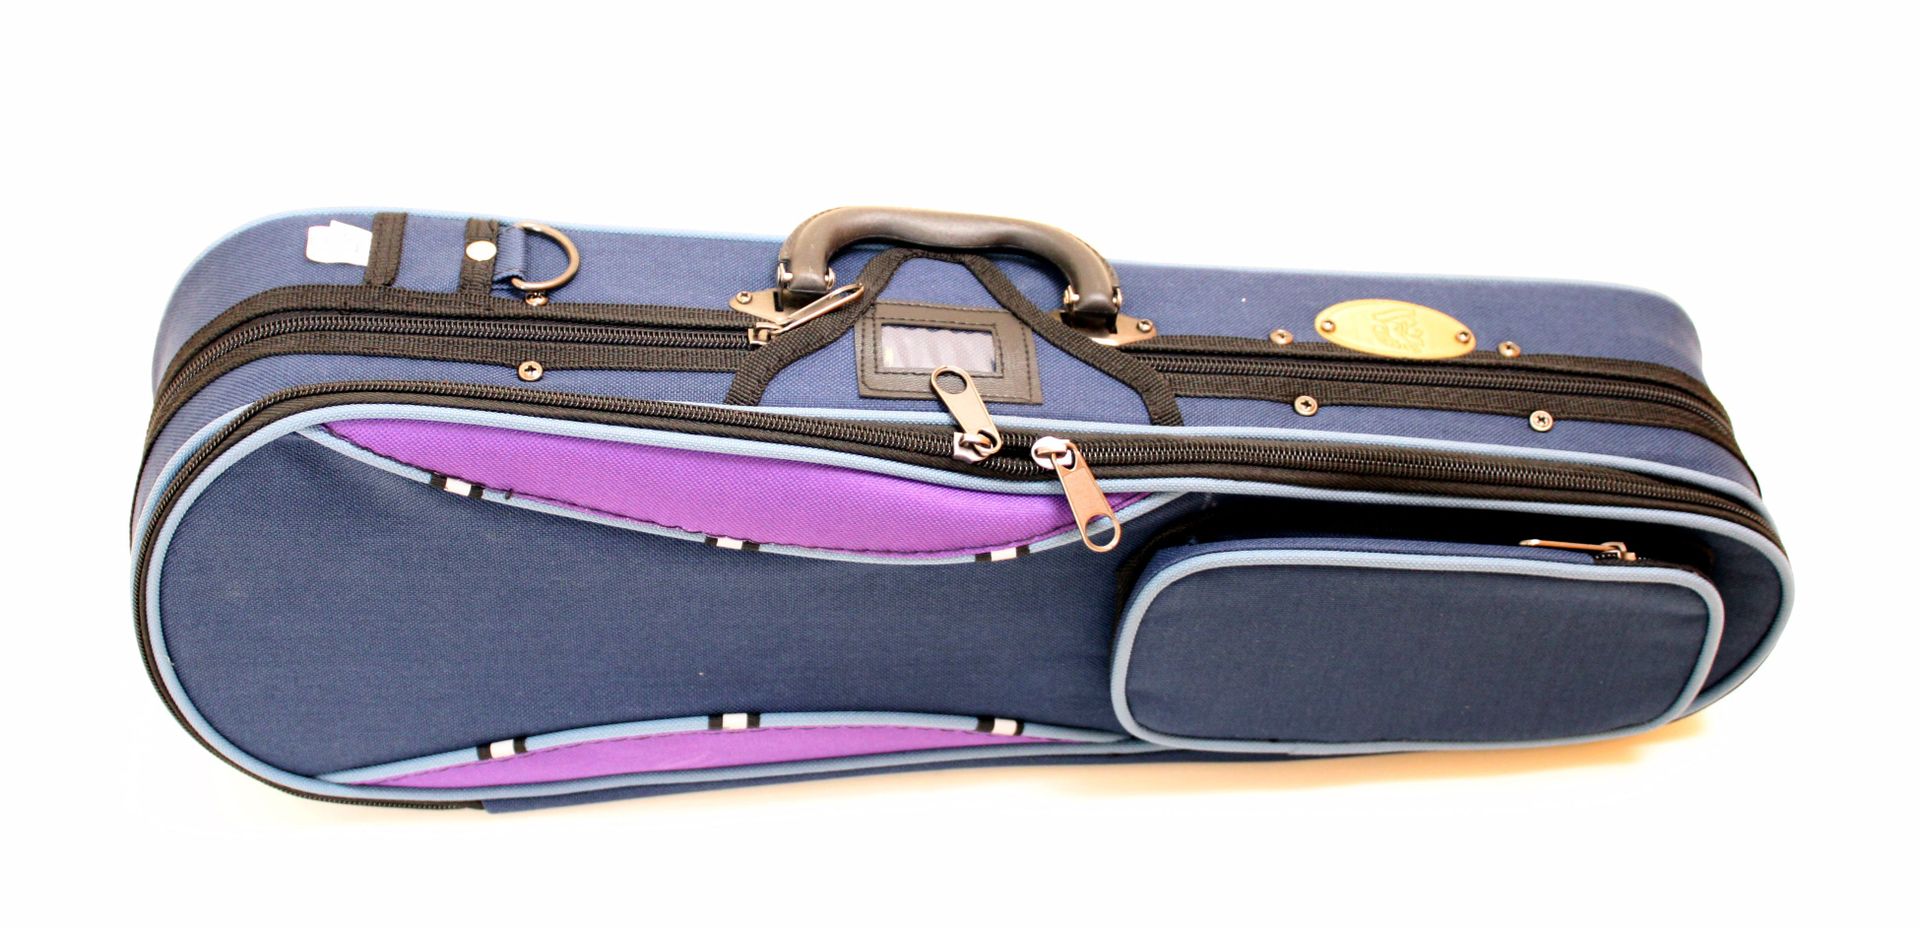 Streichzubehoer - Etui für Violine 1|16 Größe Form Koffer von Stentor incl.Träger - Onlineshop Musikhaus Markstein